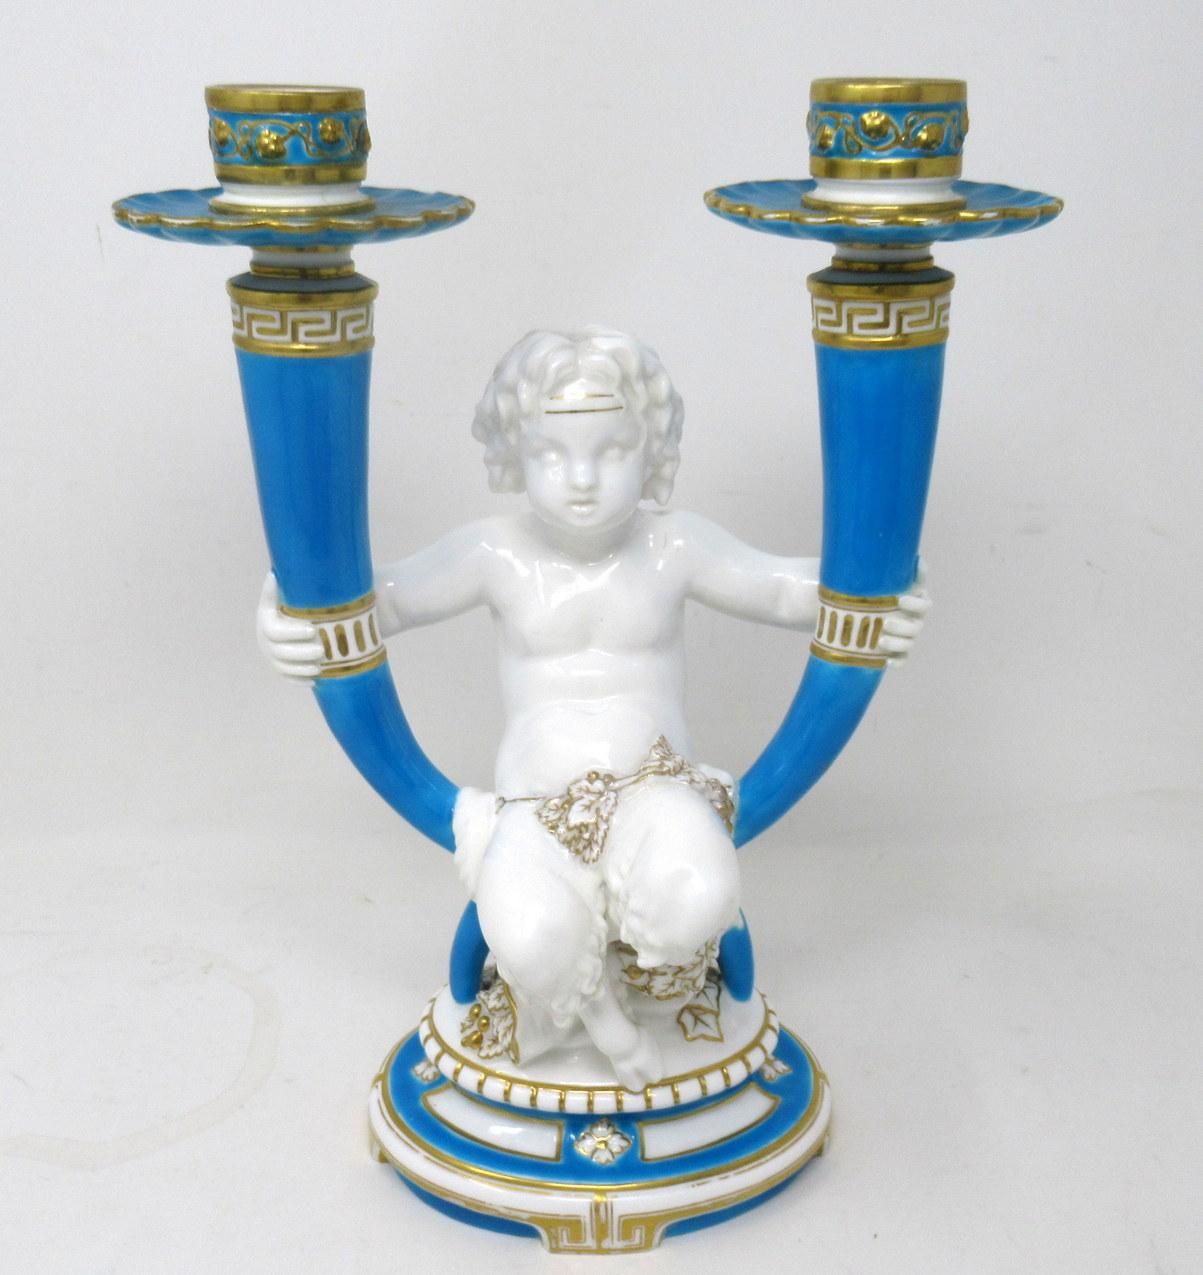 Superbe exemple de candélabre anglais à deux branches en porcelaine de Minton, représentant un chérubin tenant dans chaque main un bougeoir, assis sur une base ovale au-dessus d'un pied élaboré. Vers le troisième quart du XIXe siècle, peut-être plus